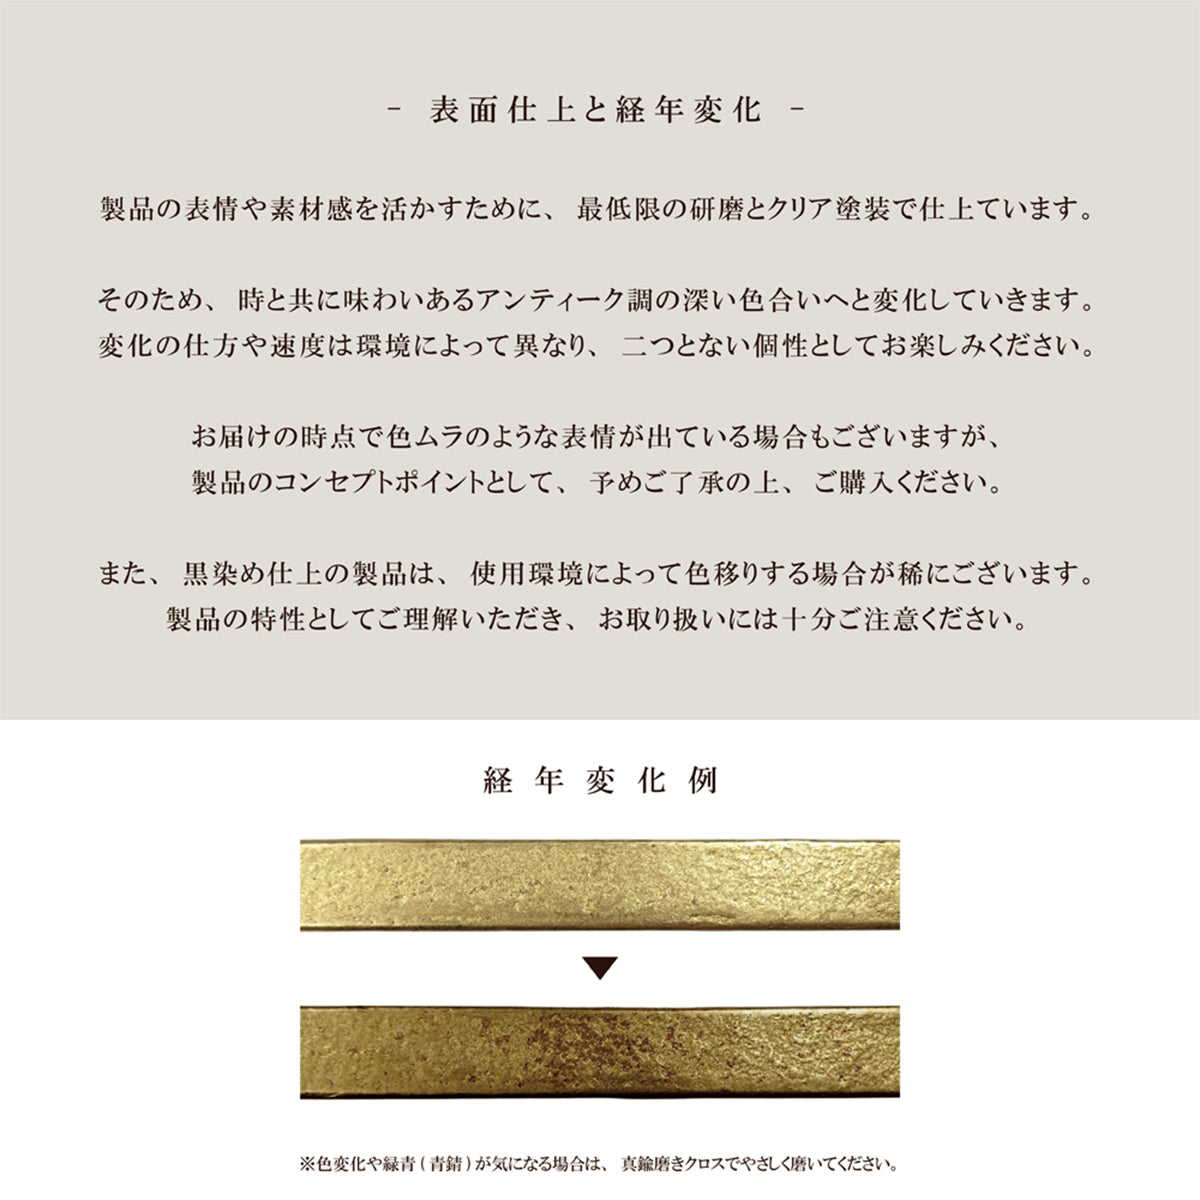 Brass Casting 真鍮鋳物 タオル掛け (L型 黒染め BT-201)